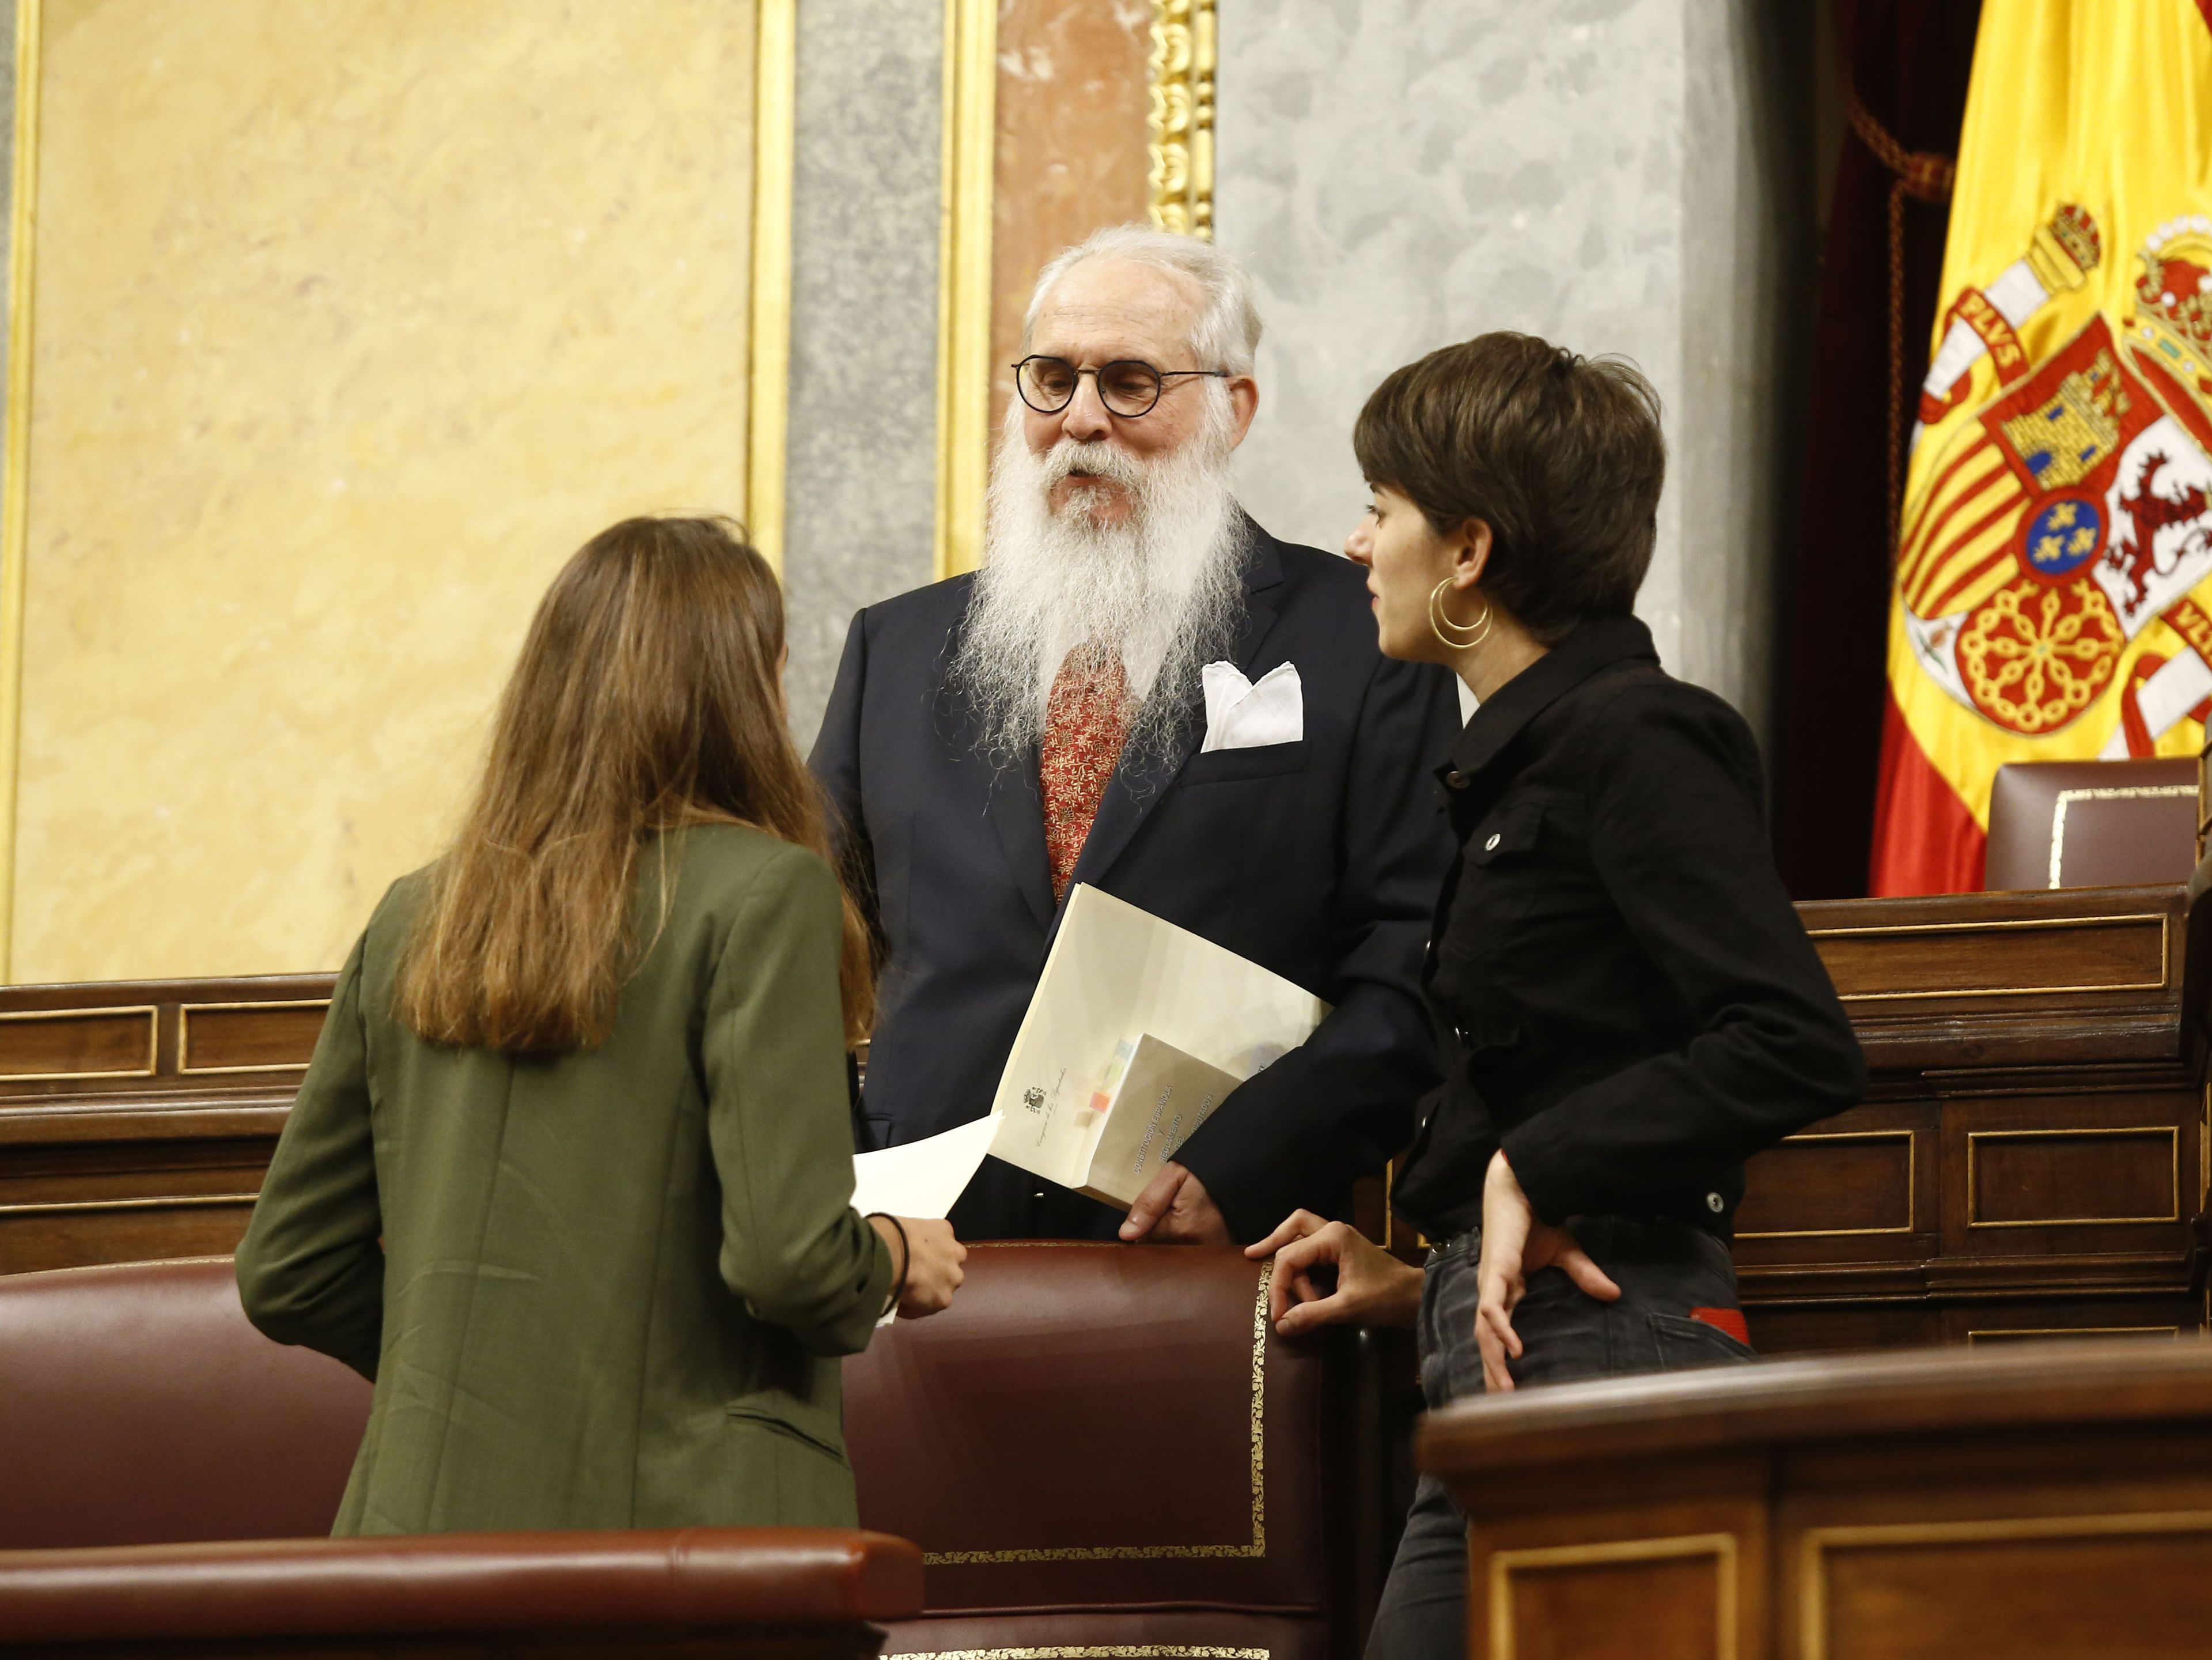 Las diputadas más jóvenes, Lucía Muñoz (UP, izq.) y Marta Rosique (ERC, der.) acompañan al diputado más viejo, Agustín Zamarrón (PSOE).